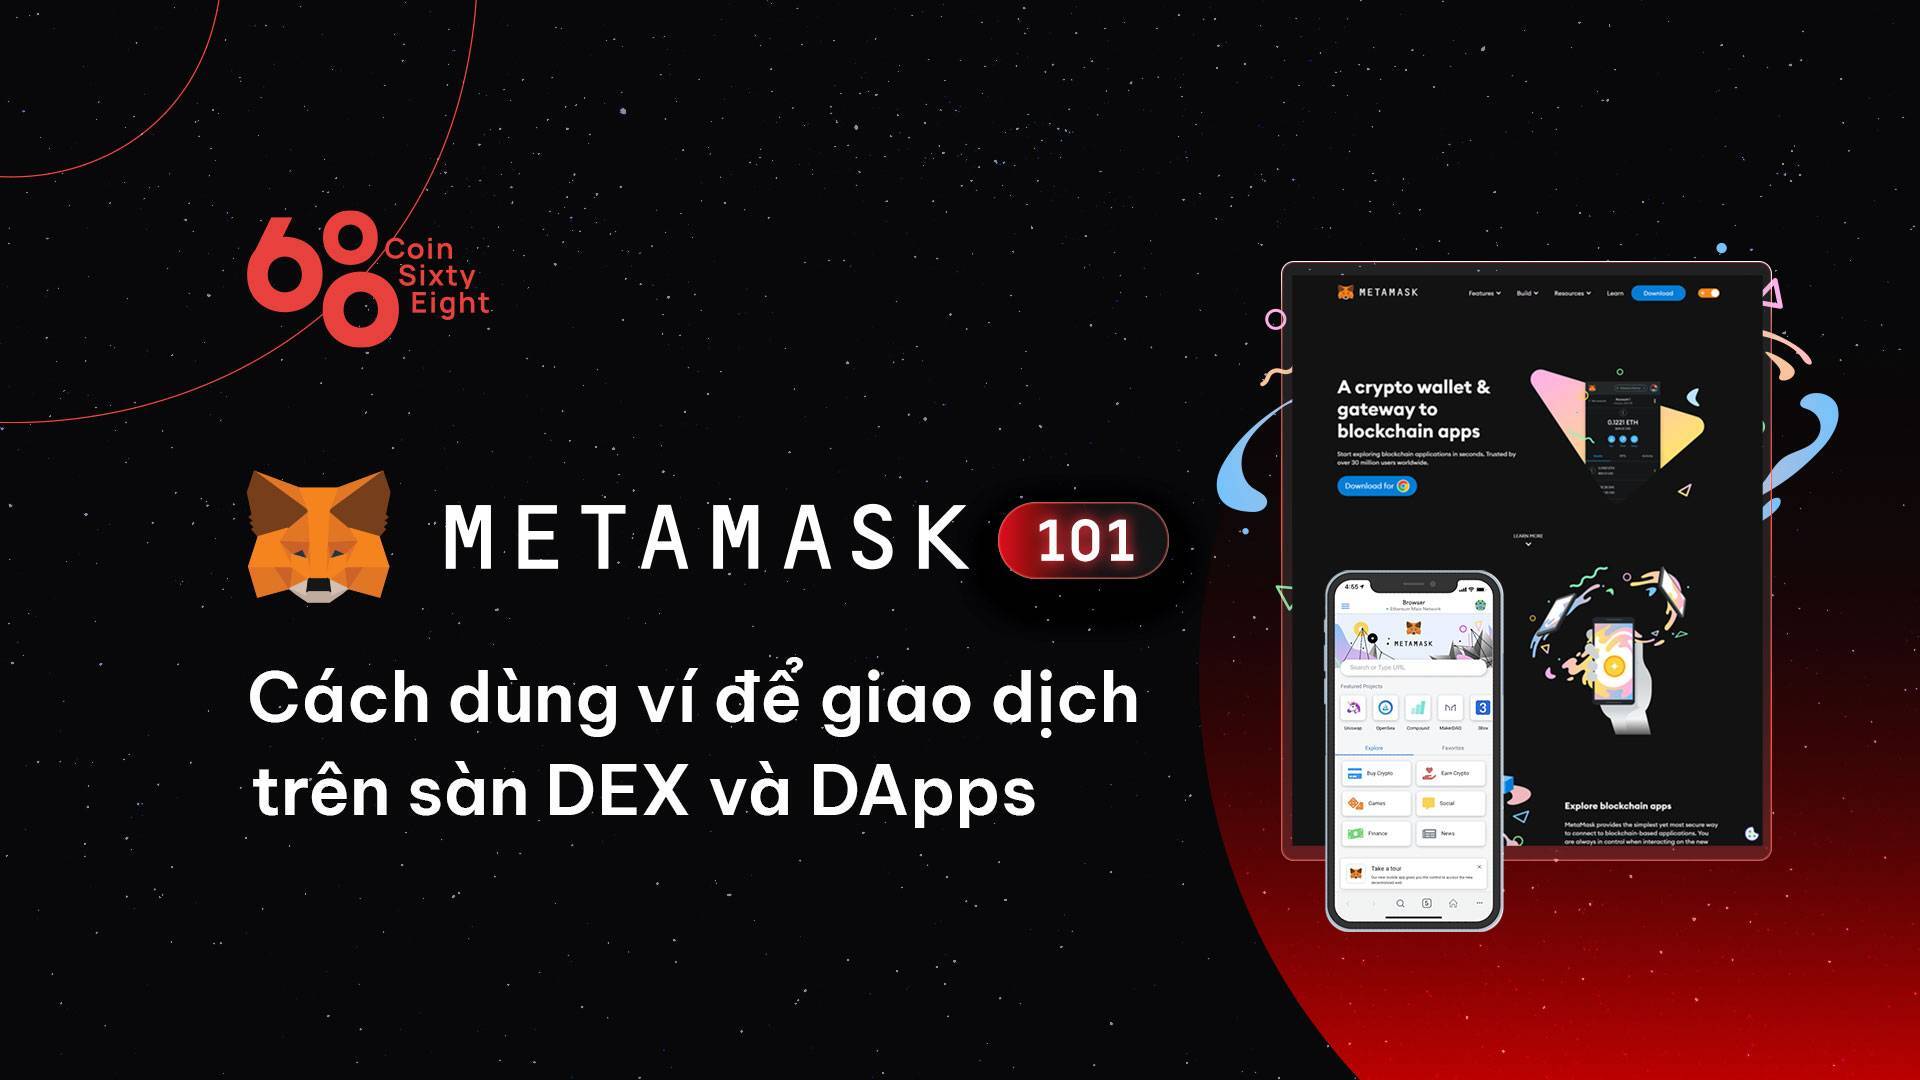 Metamask 101 Cách Dùng Ví Để Giao Dịch Trên Sàn Dex Và Dapps